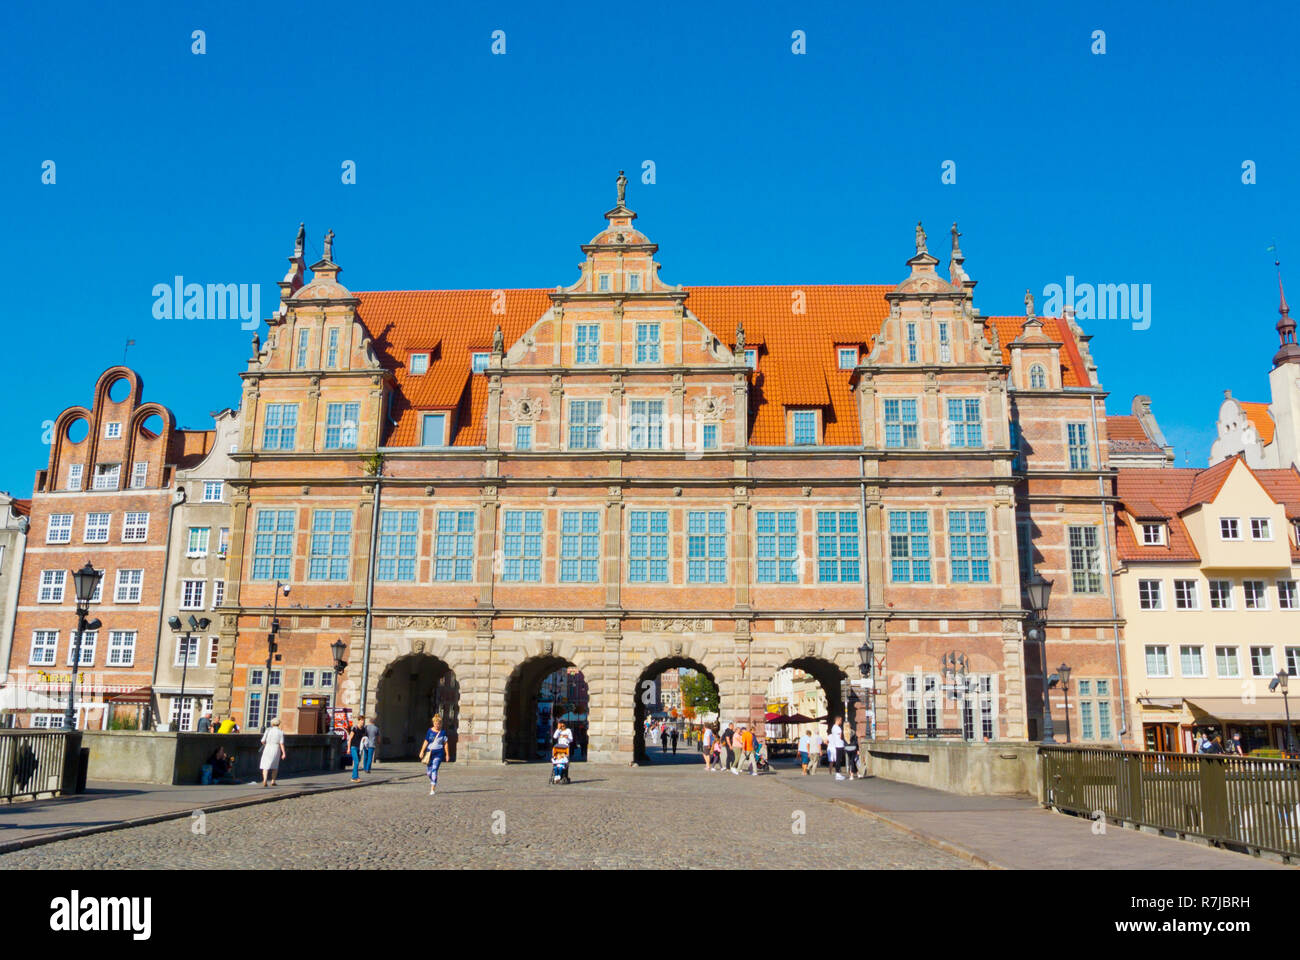 Zielona Brama, Green Gate, Gdansk, Poland Stock Photo - Alamy